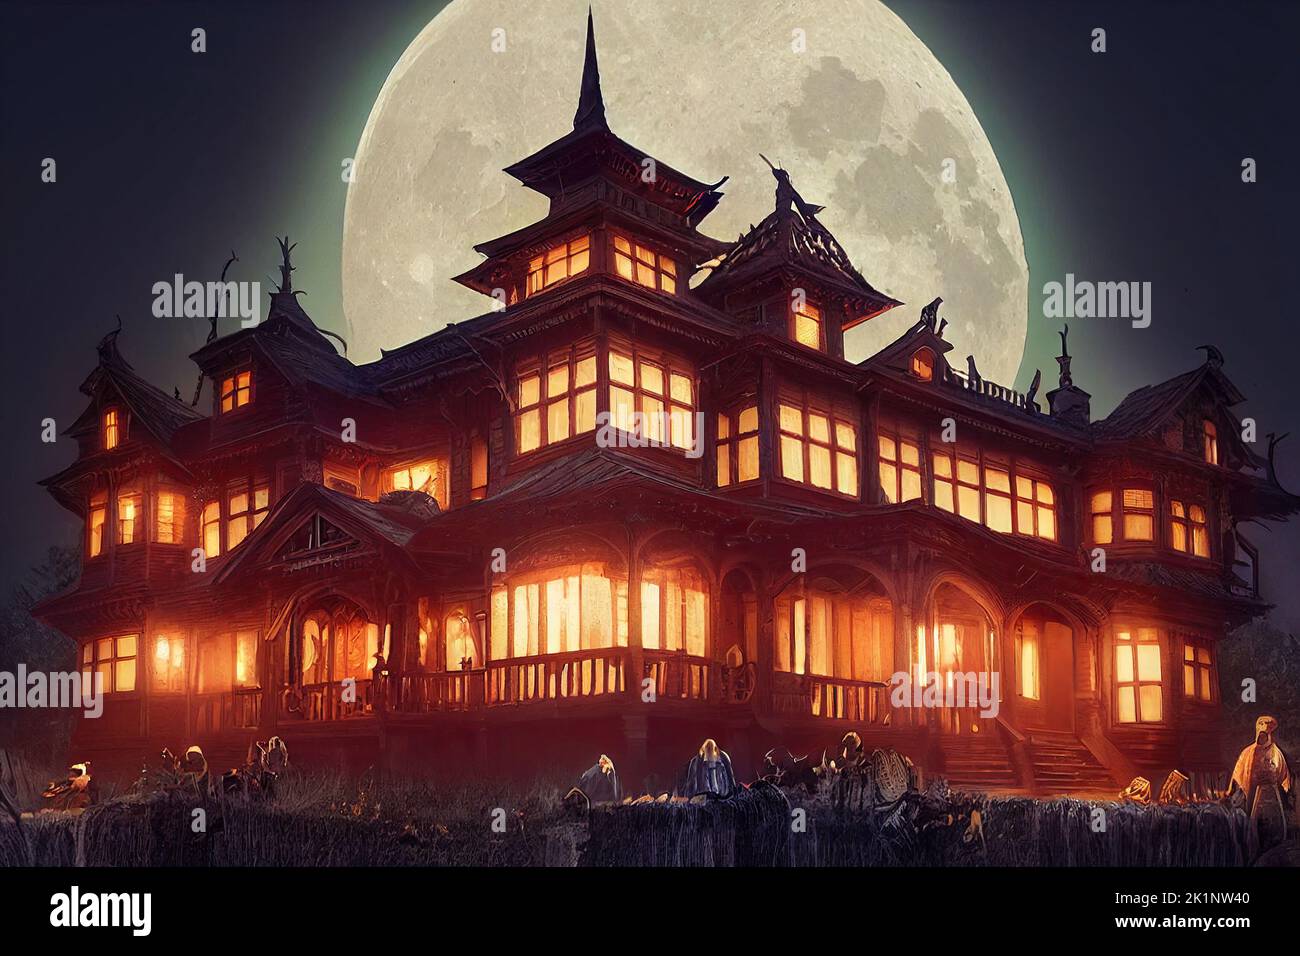 Un gran edificio iluminado con velas, una antigua casa colonial y luna llena por la noche en el cementerio. Casa de terror de Halloween en la oscuridad. Ilustración 3D Foto de stock